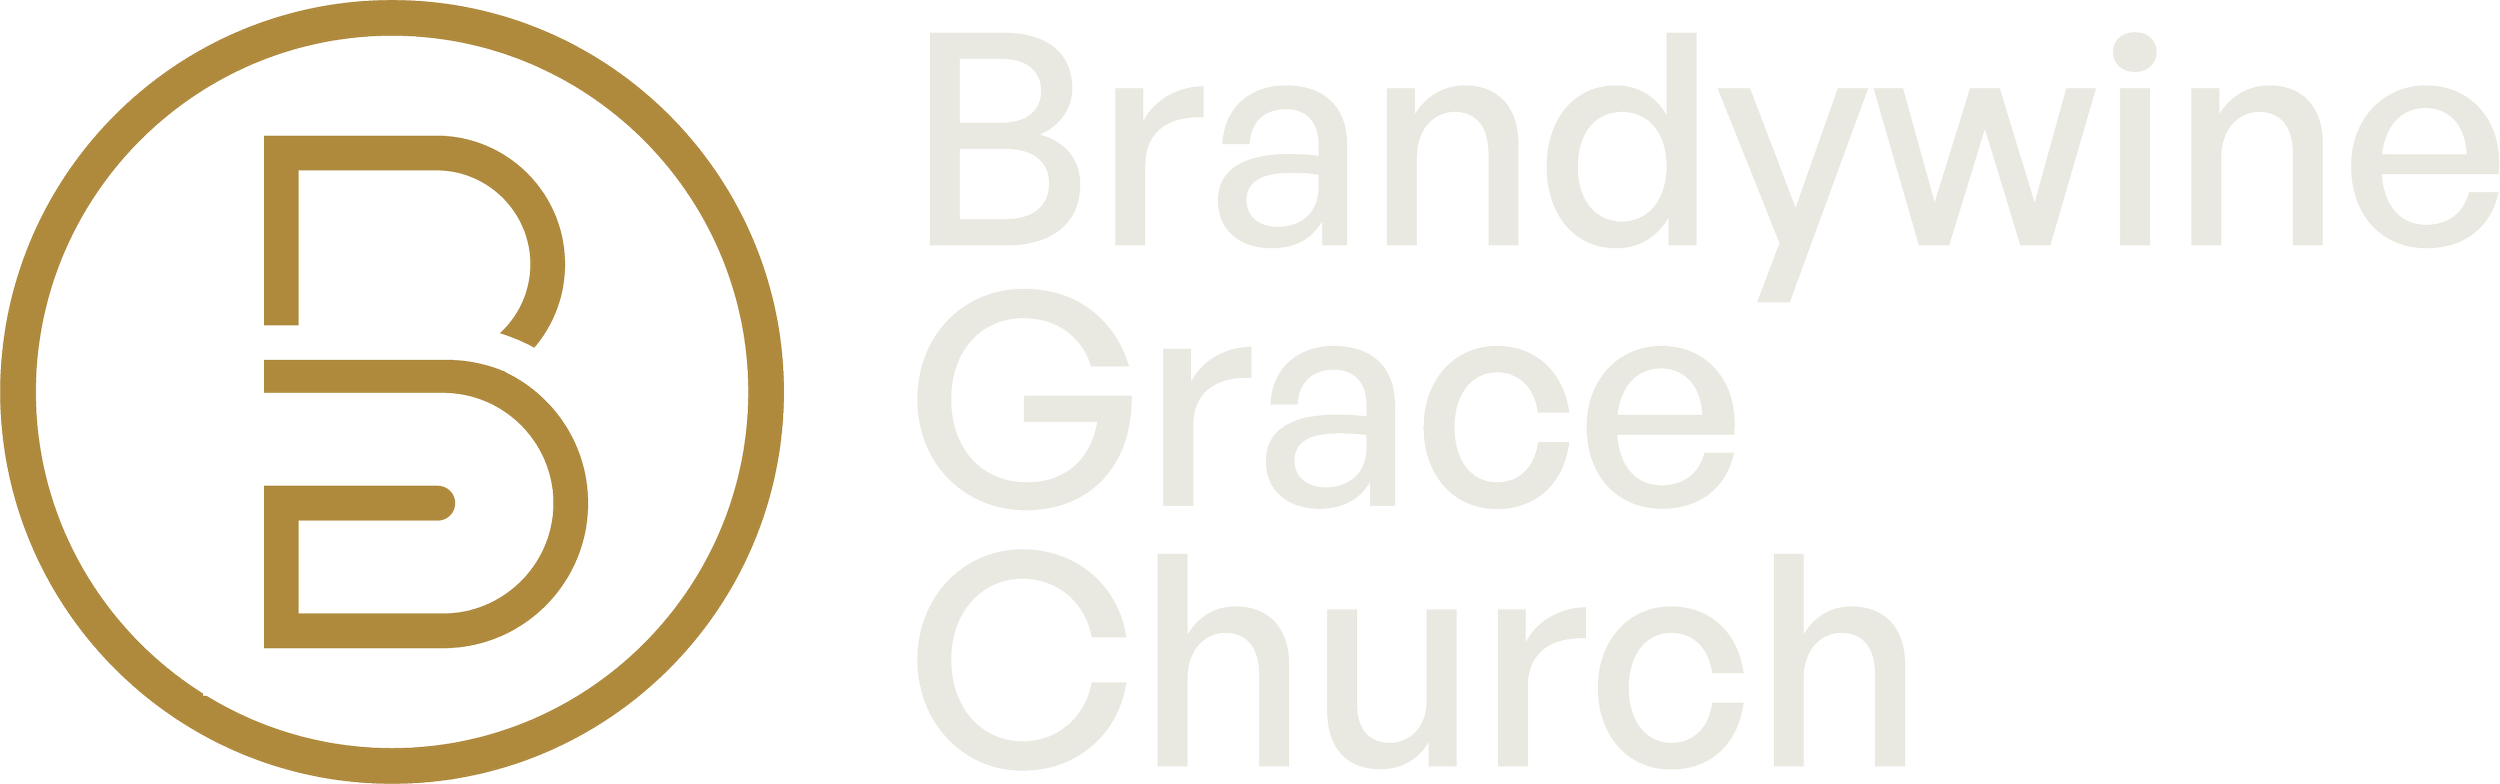 Brandywine Grace Church